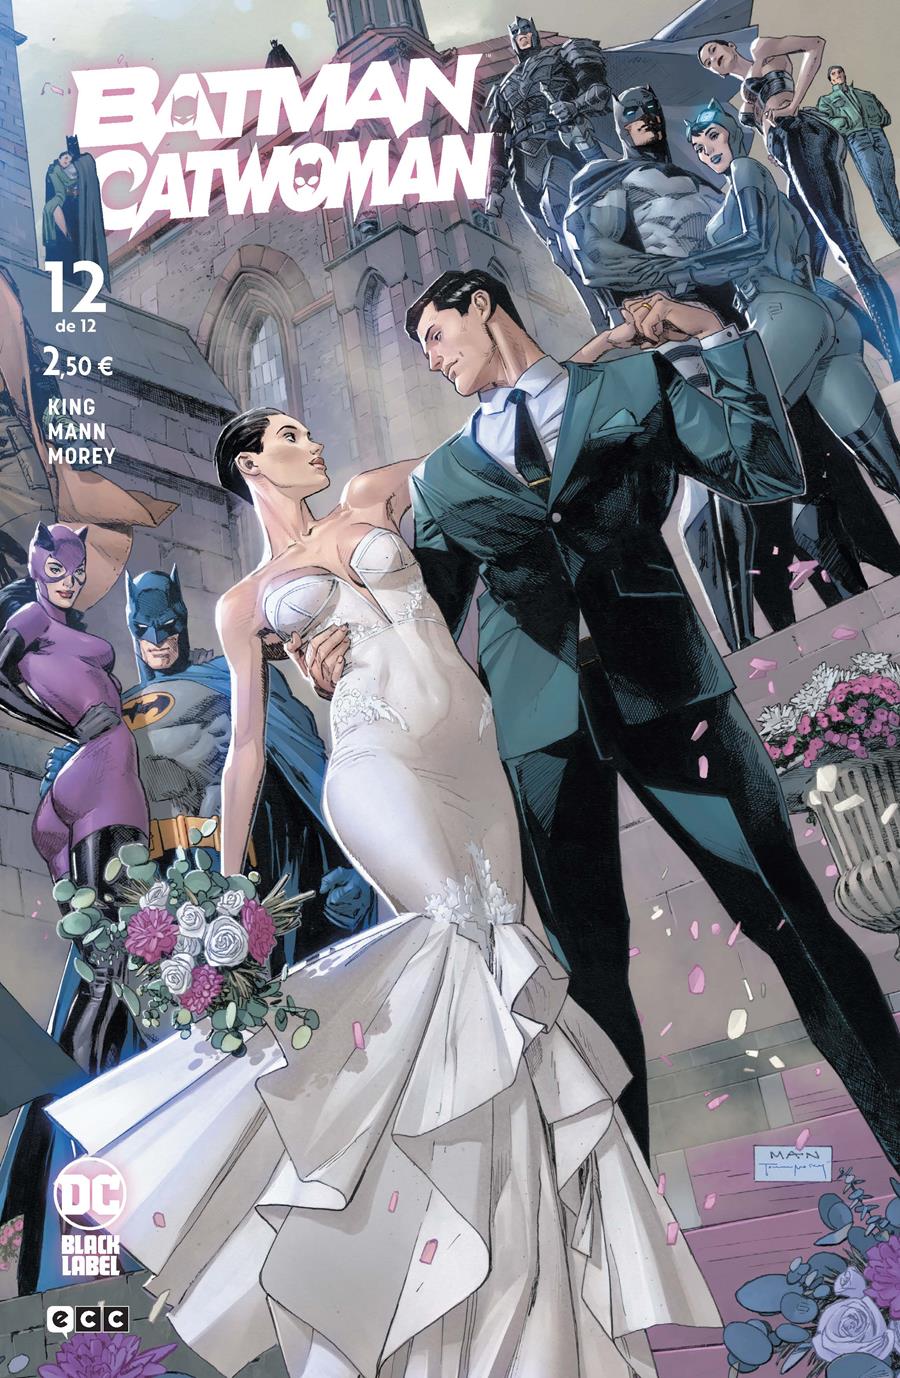 Batman/Catwoman núm. 12 de 12 | N1022-ECC39 | Clay Mann / Tom King | Terra de Còmic - Tu tienda de cómics online especializada en cómics, manga y merchandising